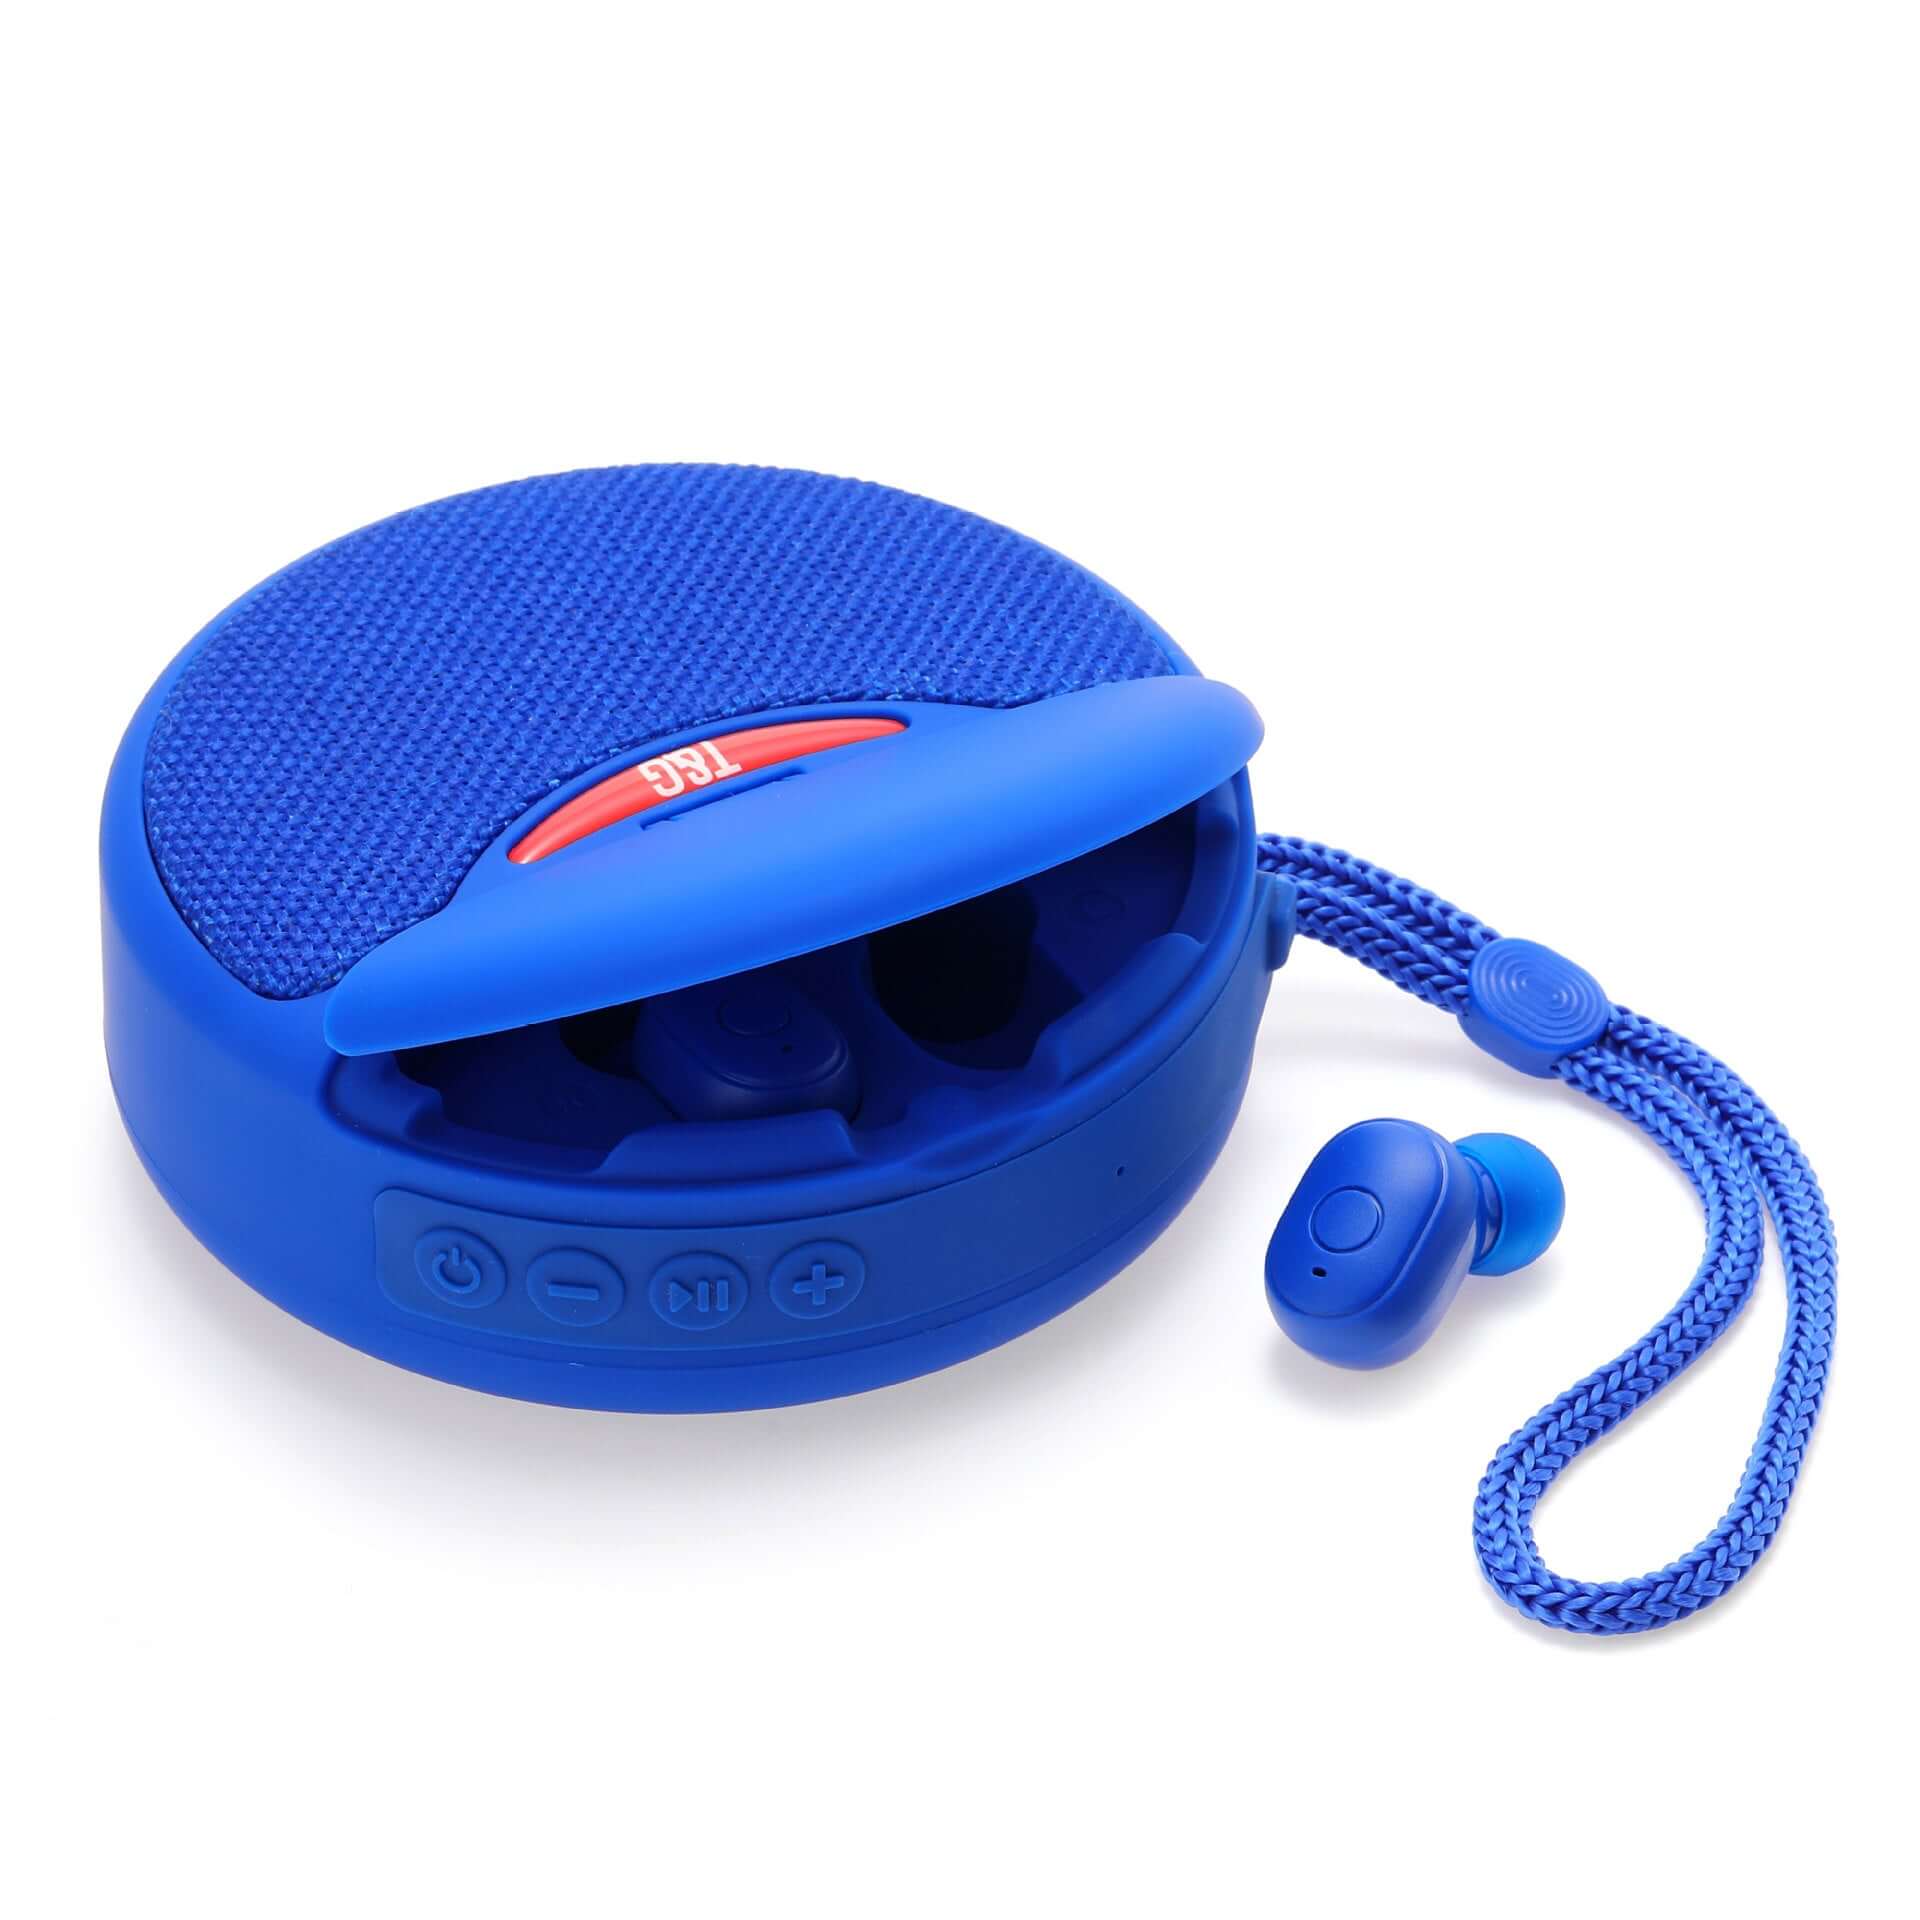 Earpods speaker best product gadget blue